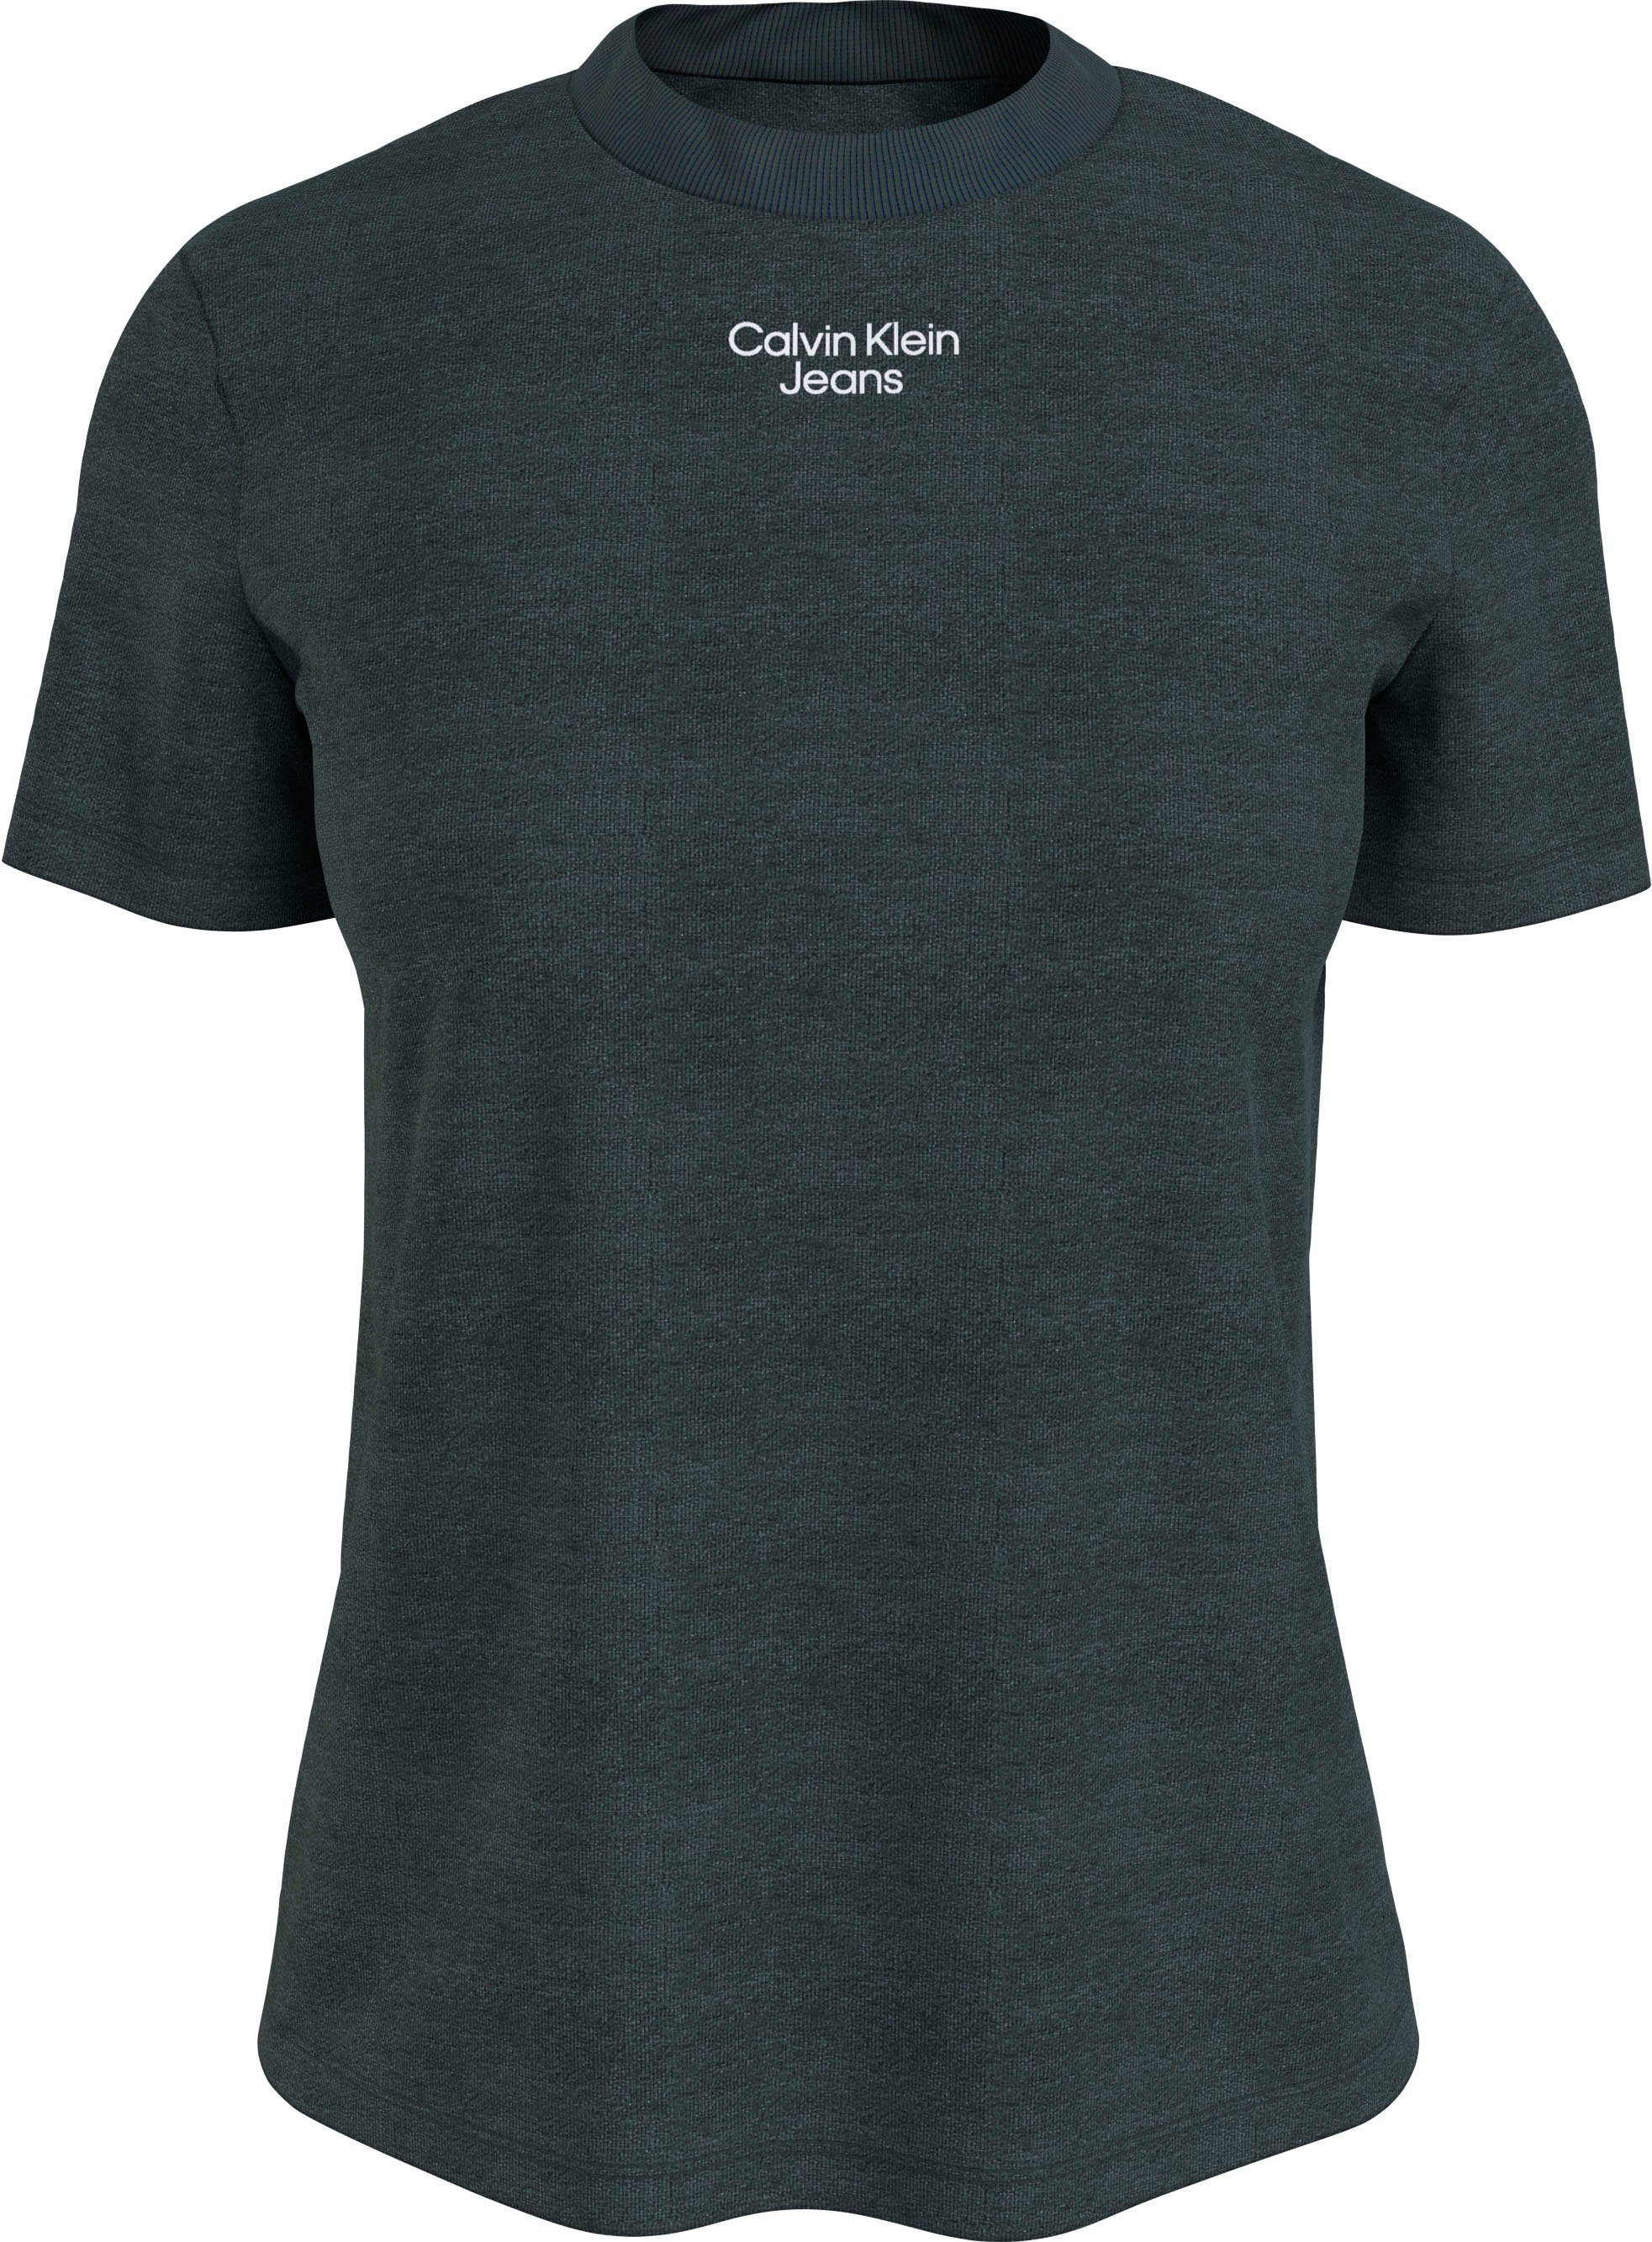 Calvin Klein Jeans T-Shirt STACKED LOGO MODERN STRAIGHT TEE mit dezentem Calvin Klein Jeans Logodruck Dark Seaweed (dunkelgrün)